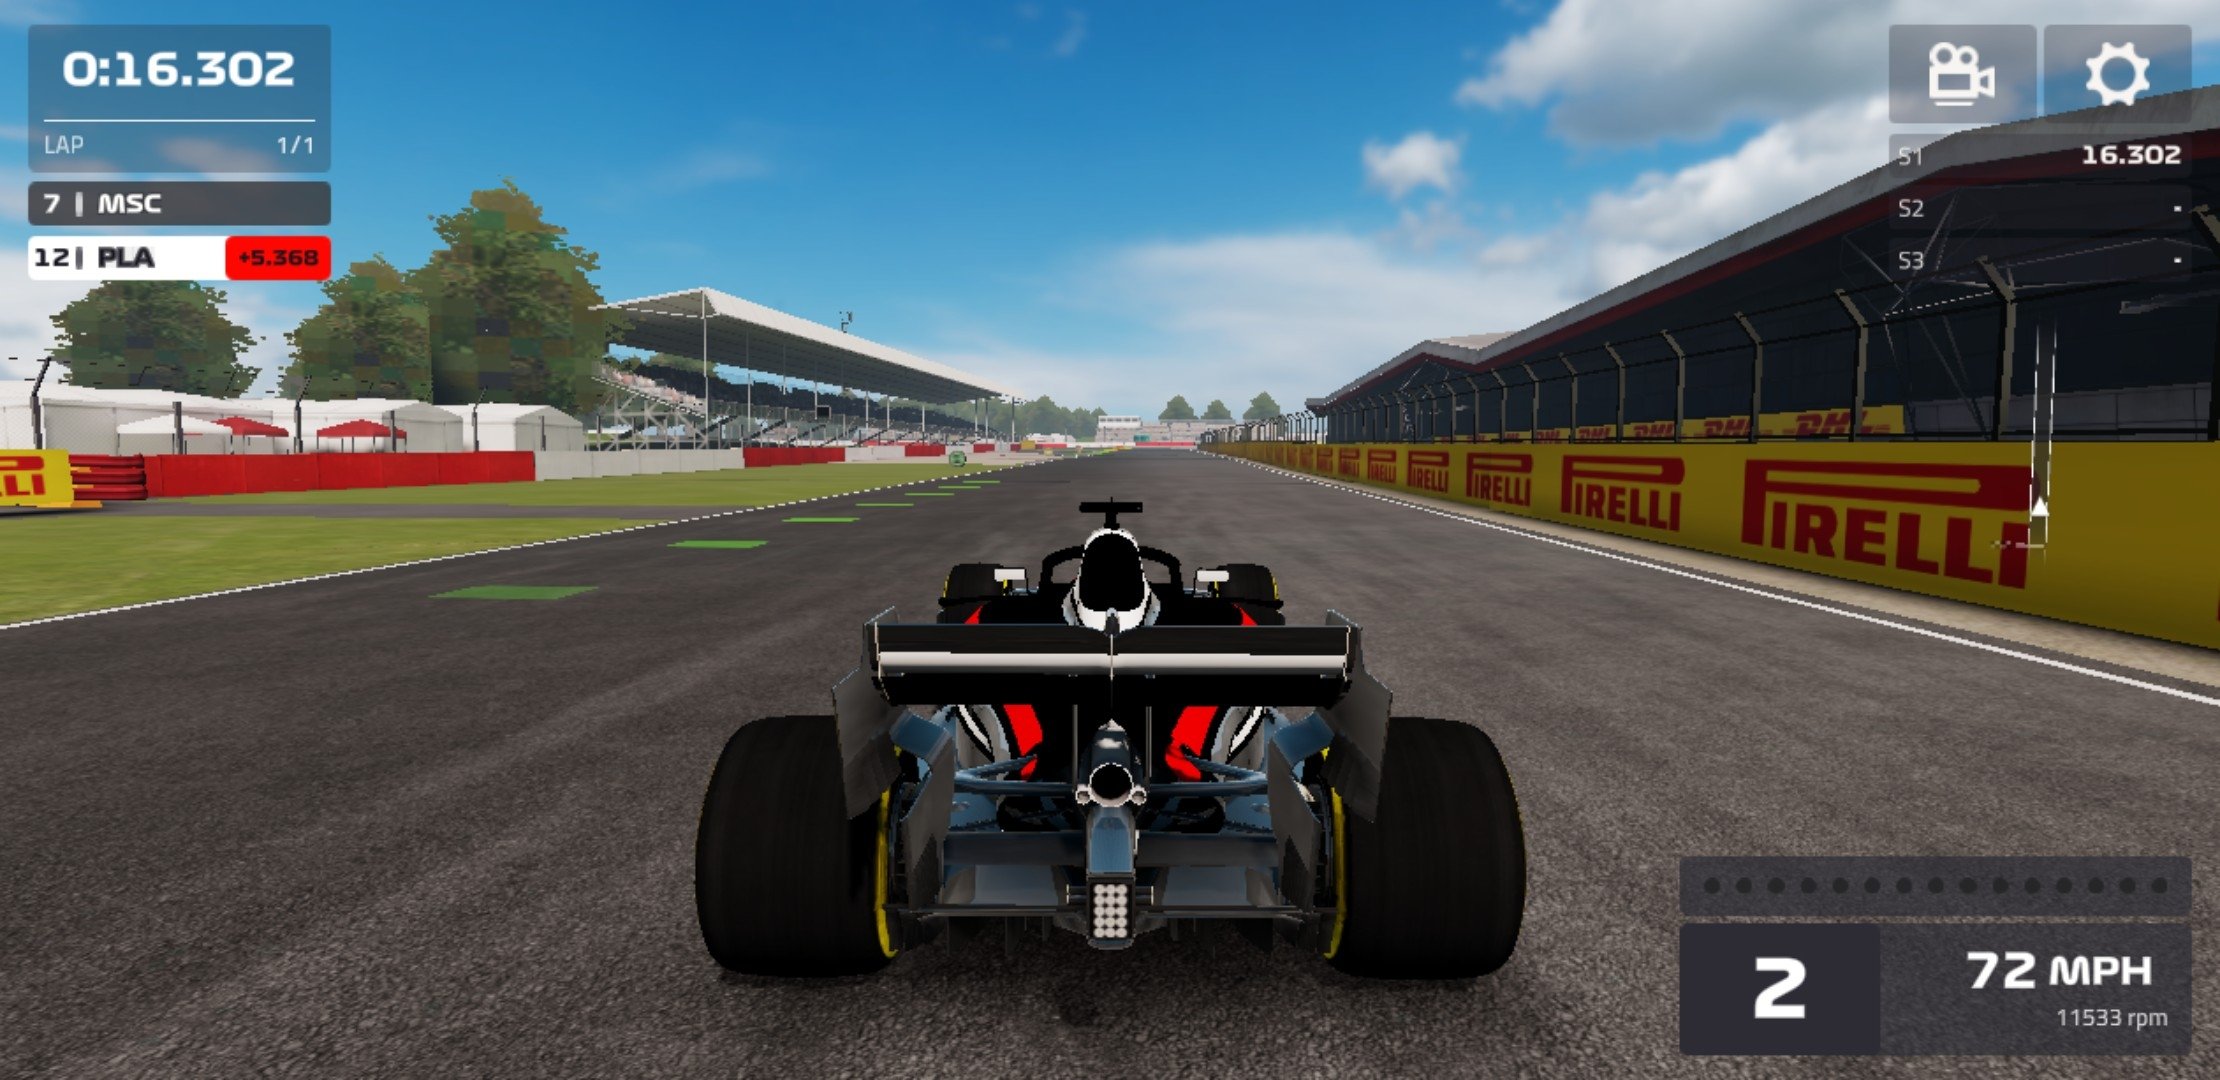 Car Racing & jogos de carros APK (Android Game) - Baixar Grátis